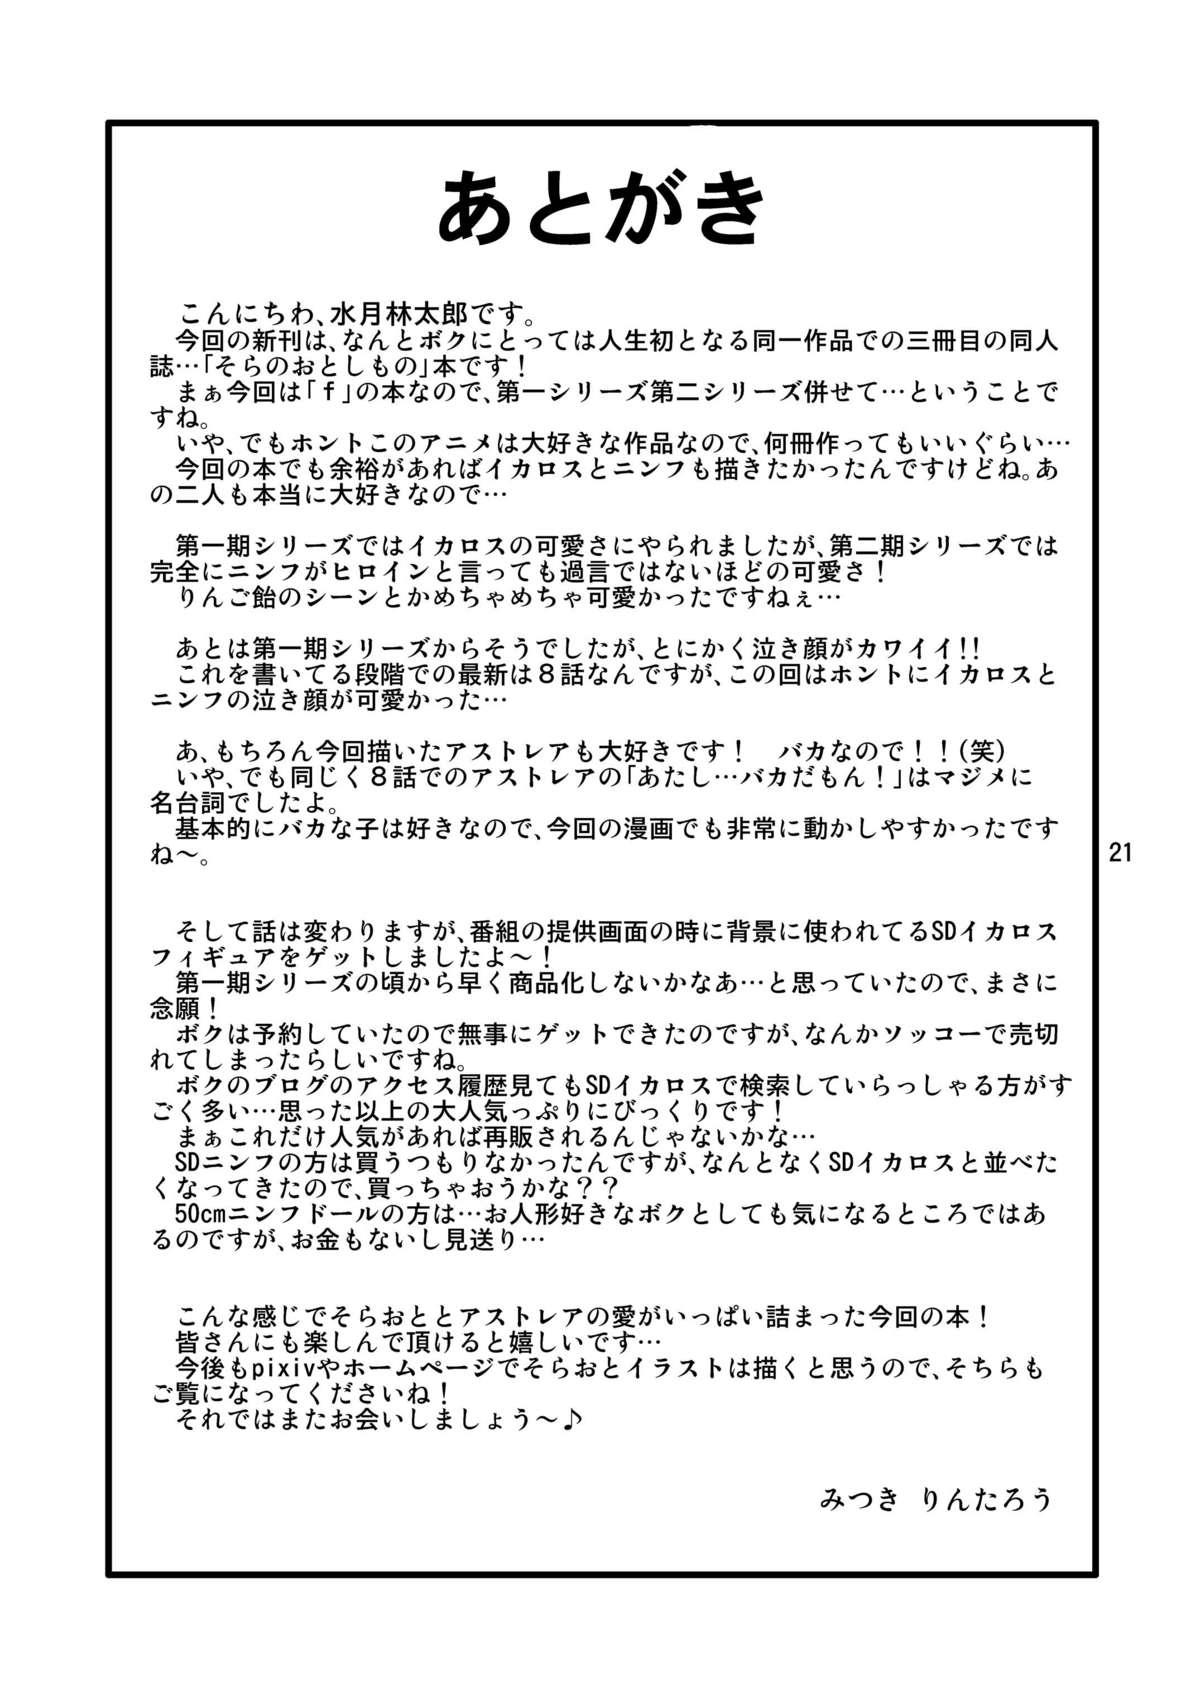 Spandex Oshiri no Tanima ni Insert!! - Sora no otoshimono Celeb - Page 21